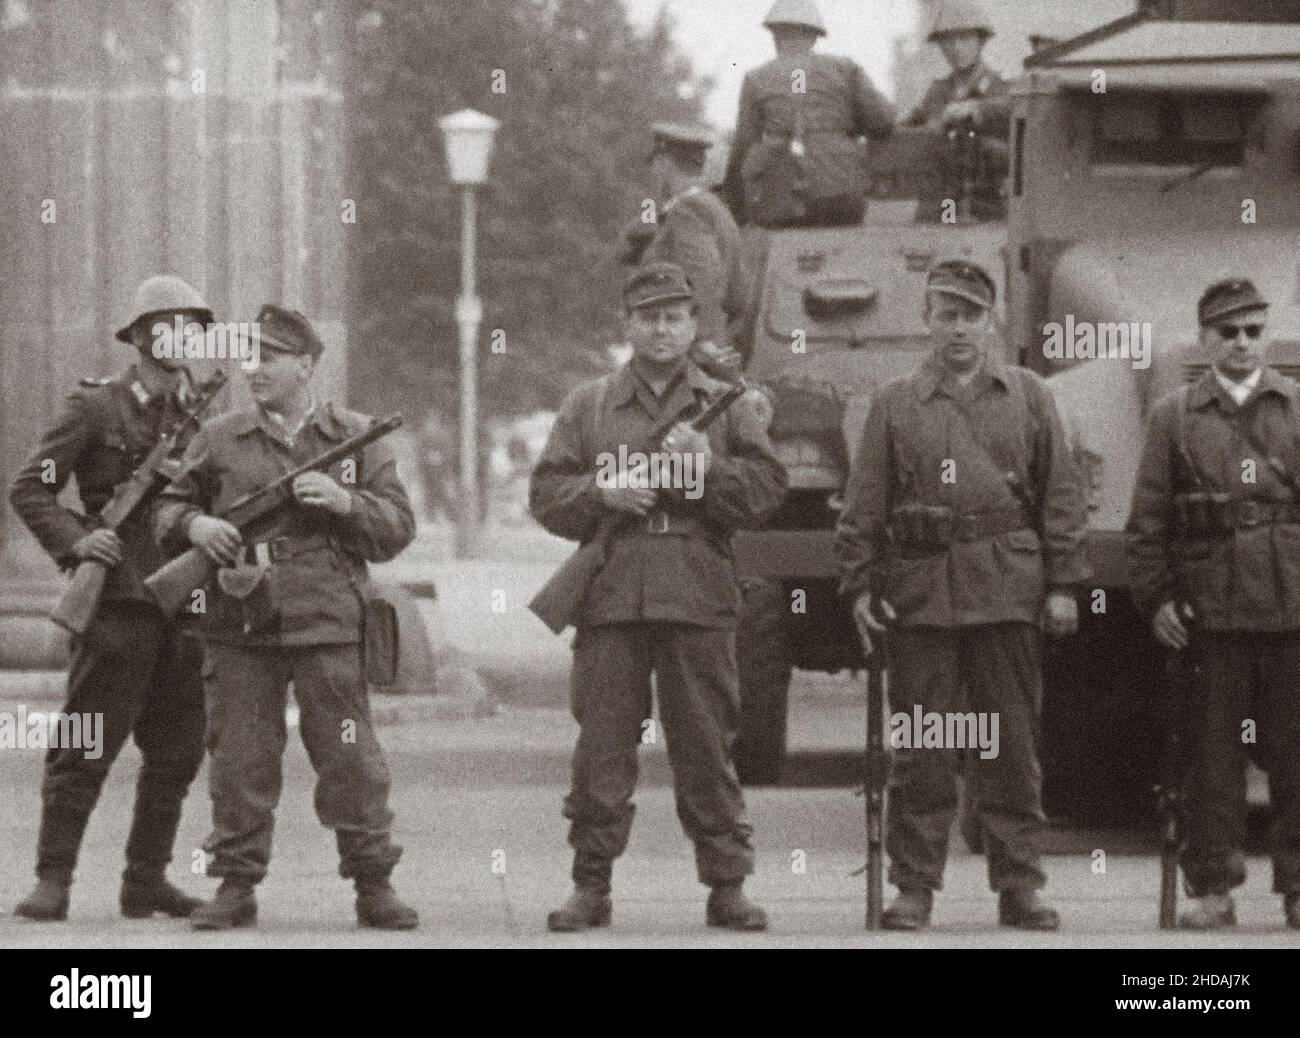 Berlino crisi del 1961. Inizio della costruzione del muro di Berlino. Gruppi di combattimento della classe operaia (Betriebskampfgruppen) della Germania orientale con sovi Foto Stock